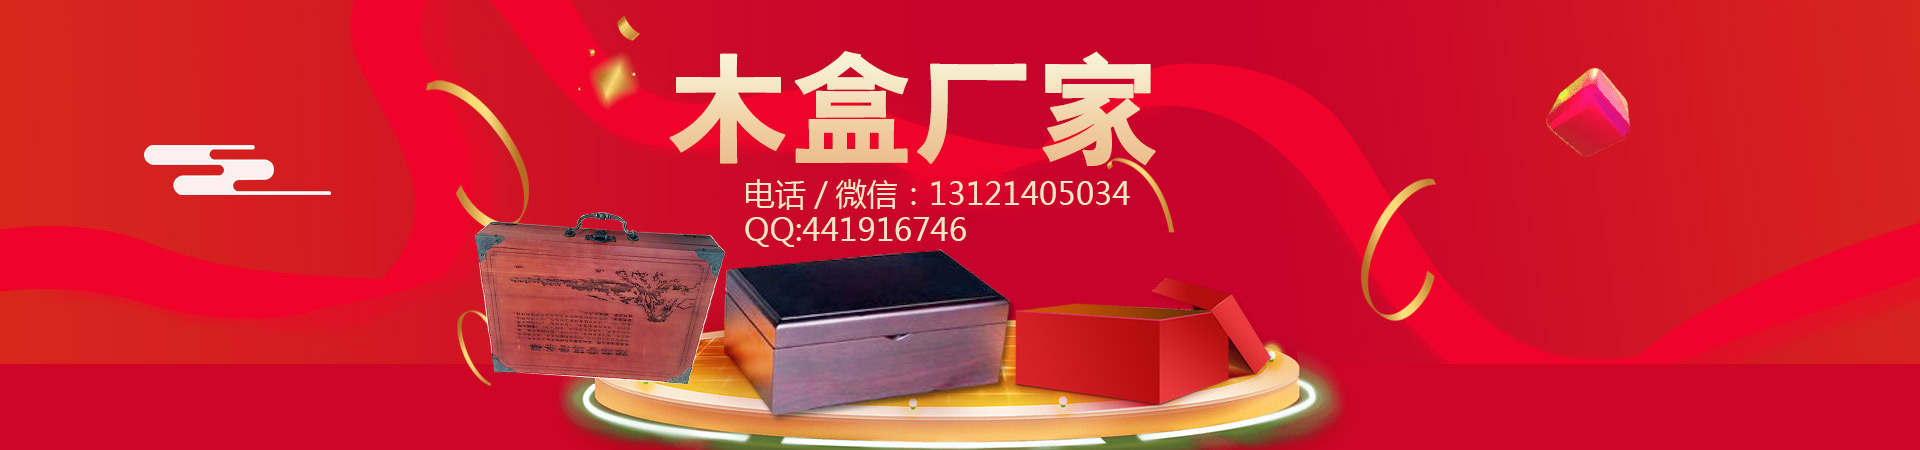 木盒、香港本地木盒、香港、香港木盒